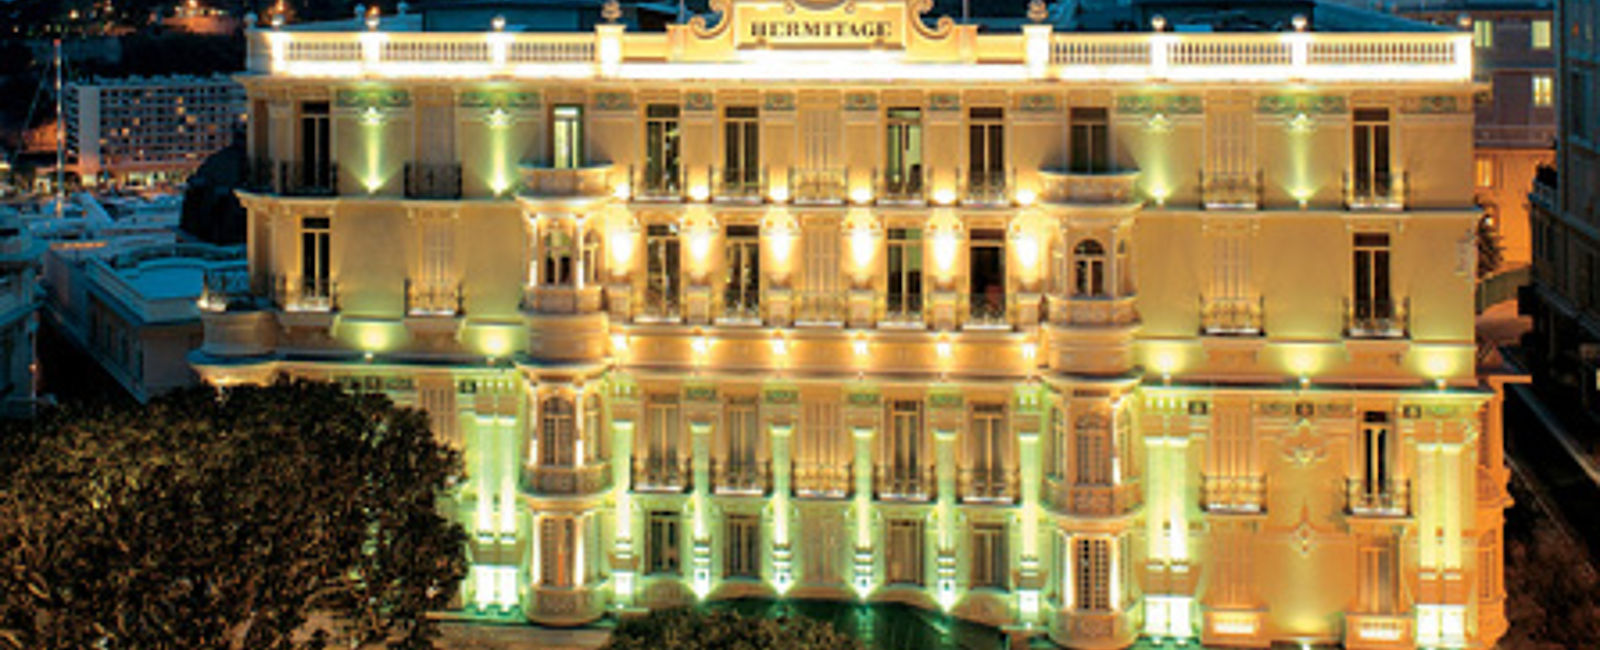 HOTEL TIPPS
 Hôtel Hermitage 
 Exzellentes Grandhotel im Zentrum von Monte Carlo 